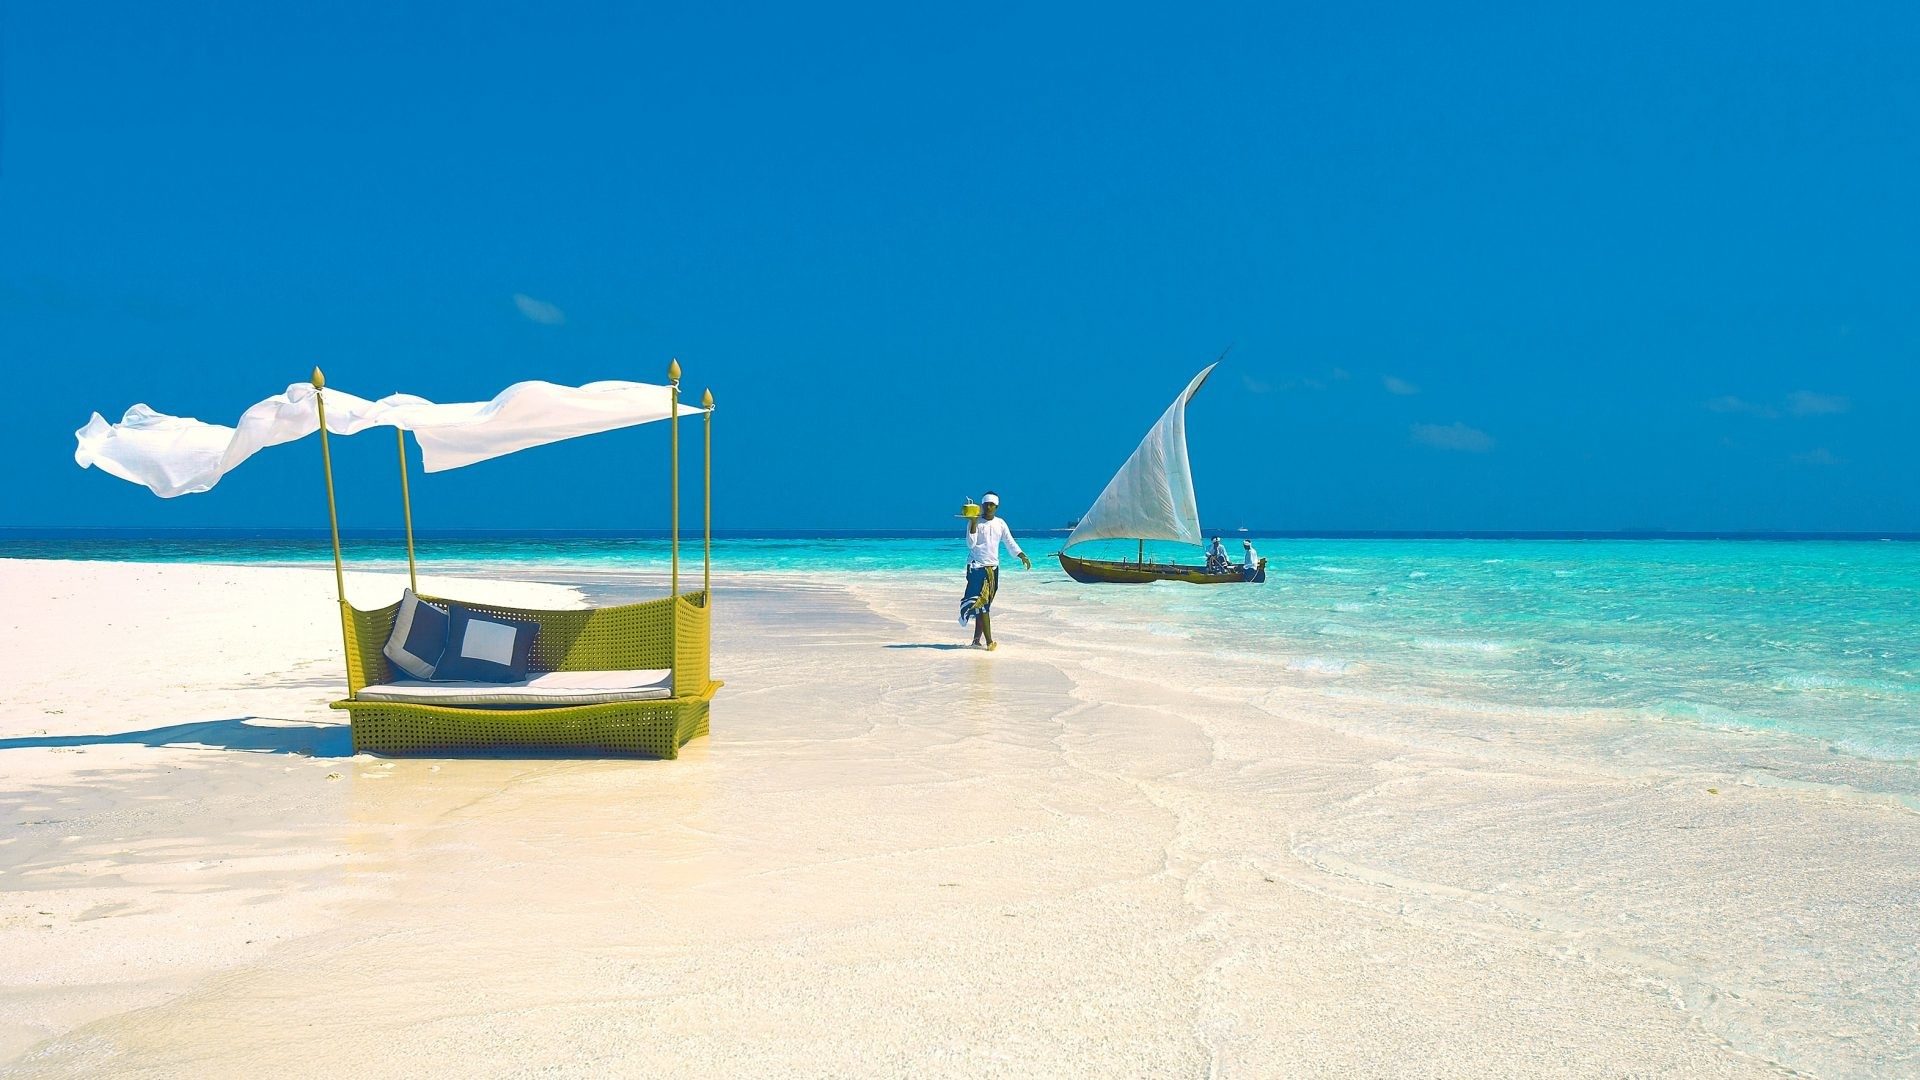 1920x1080 Beaches - Nature Sky Maldives Beach Ocean Blue HD Picture for HD 16:9 High